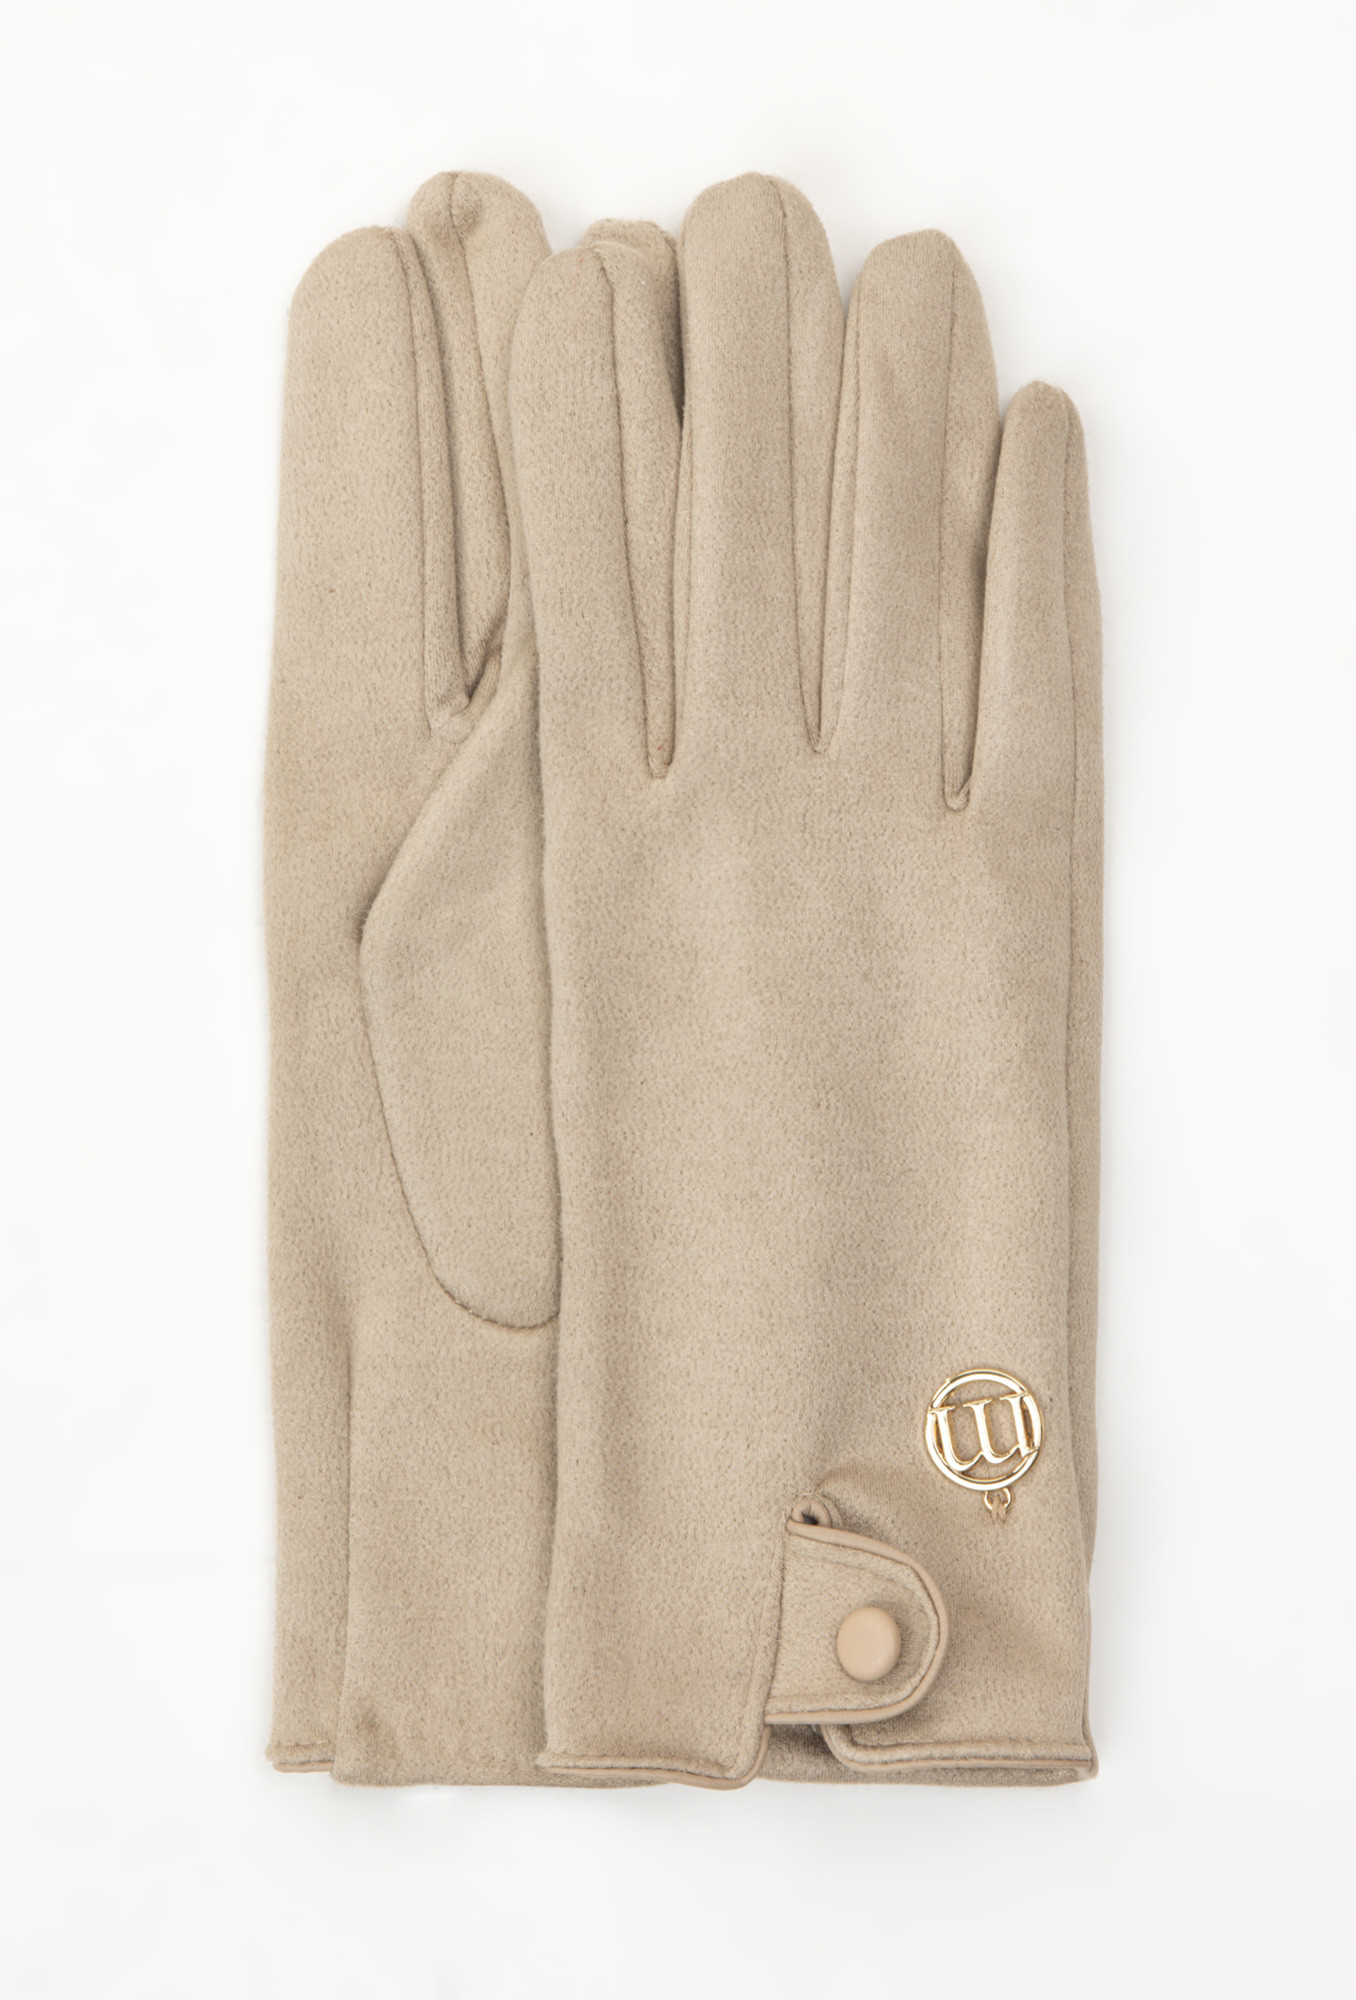 Monnari Rukavice Dámské rukavice s ozdobným knoflíkem Beige L/XL